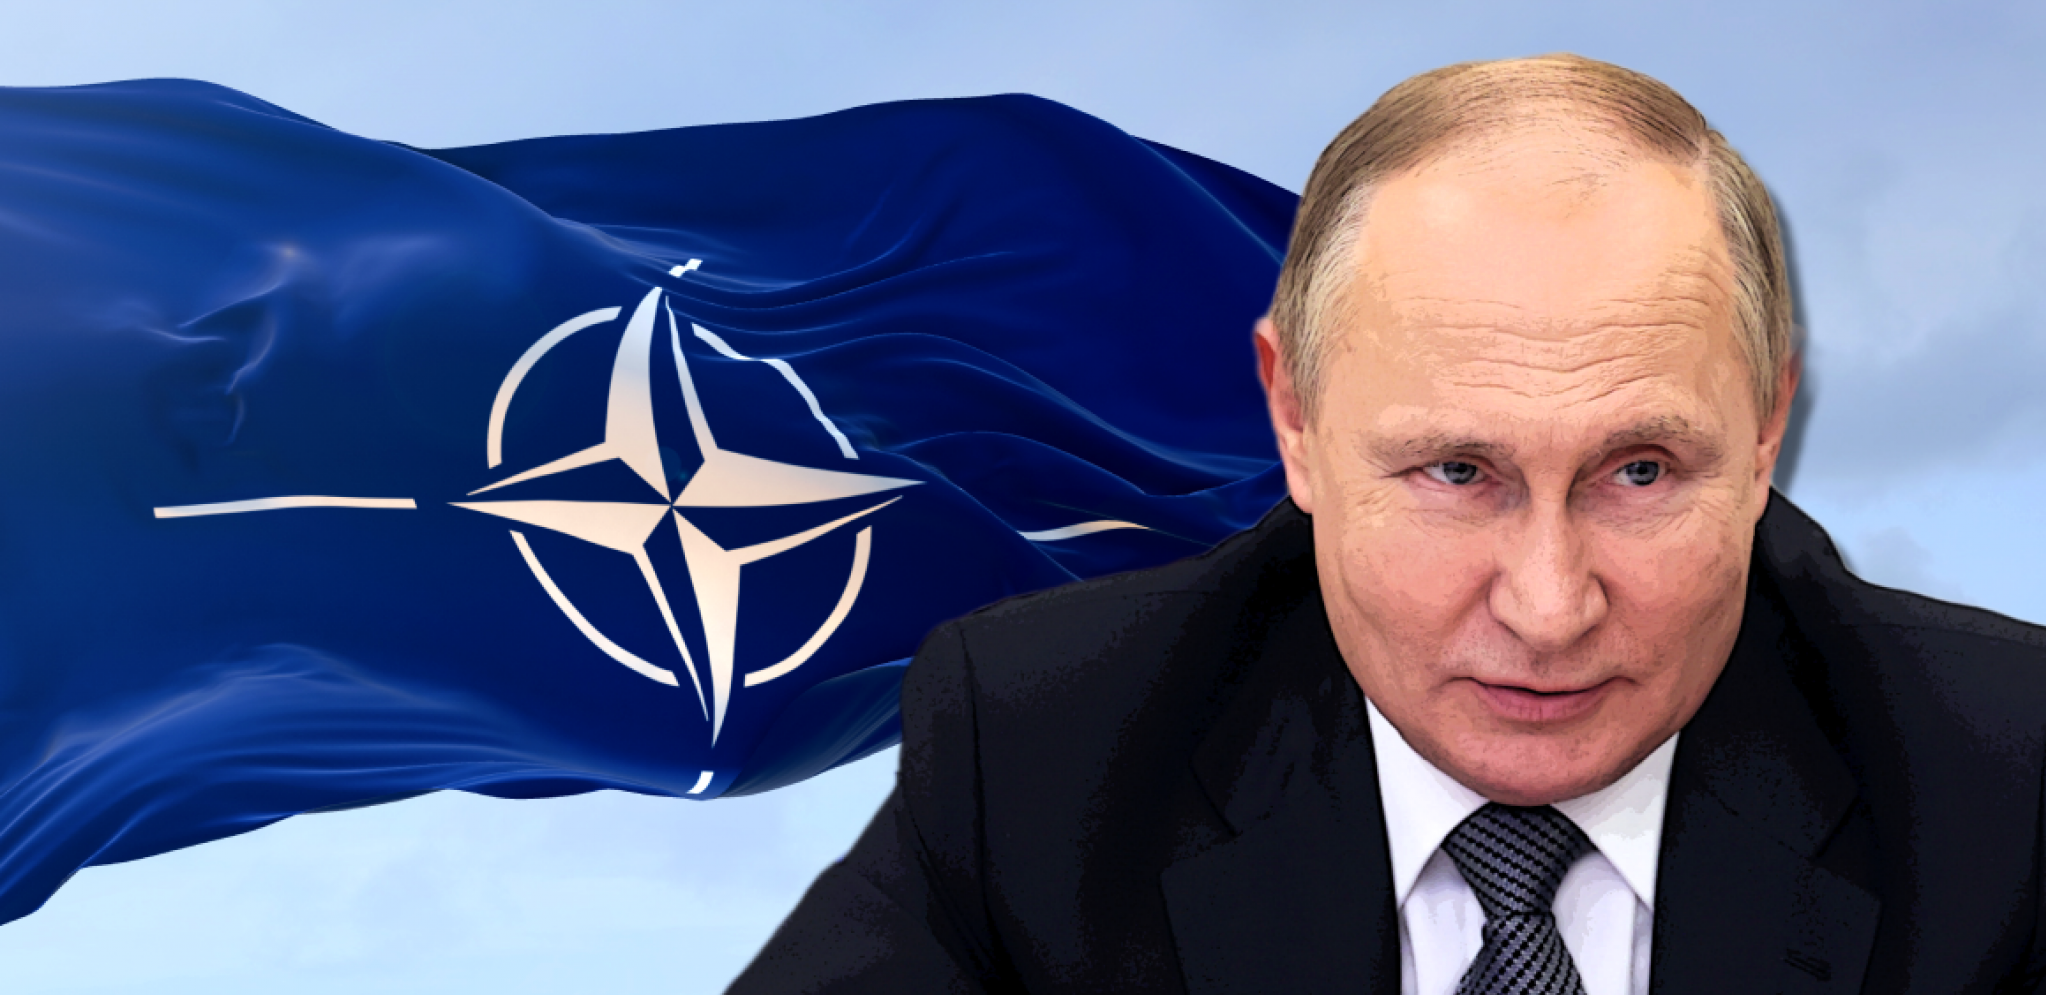 JEZIVE VESTI ZA NOVU NATO ČLANICU Putin: NIsmo imali problema, ali sada će ih biti...